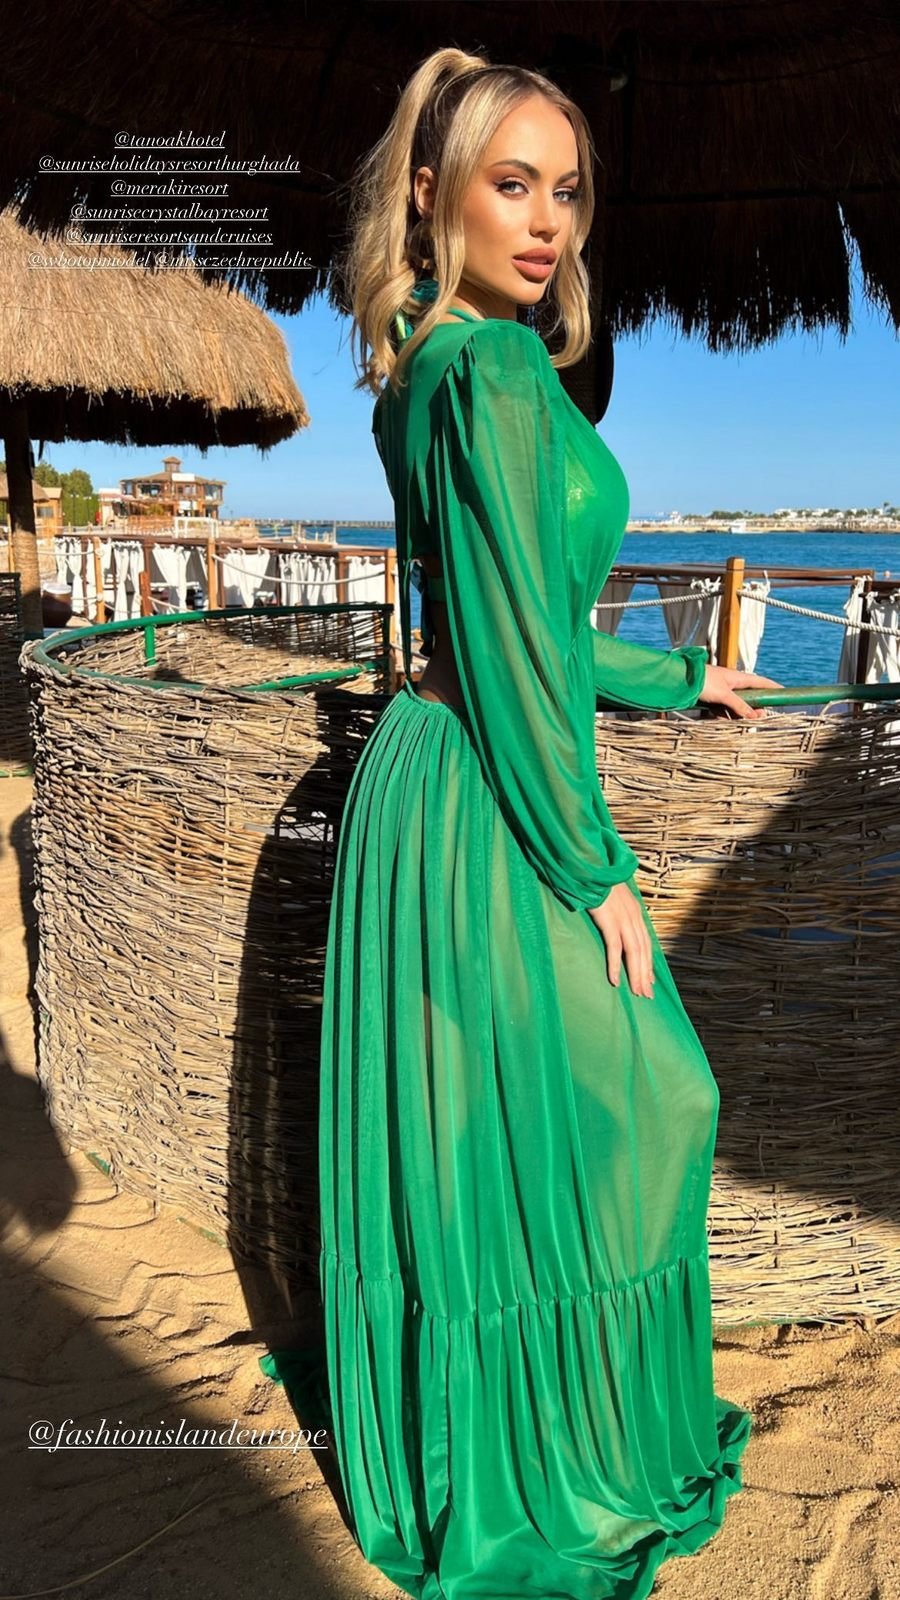 Natálie Kočendová na soutěži Top Model of the World